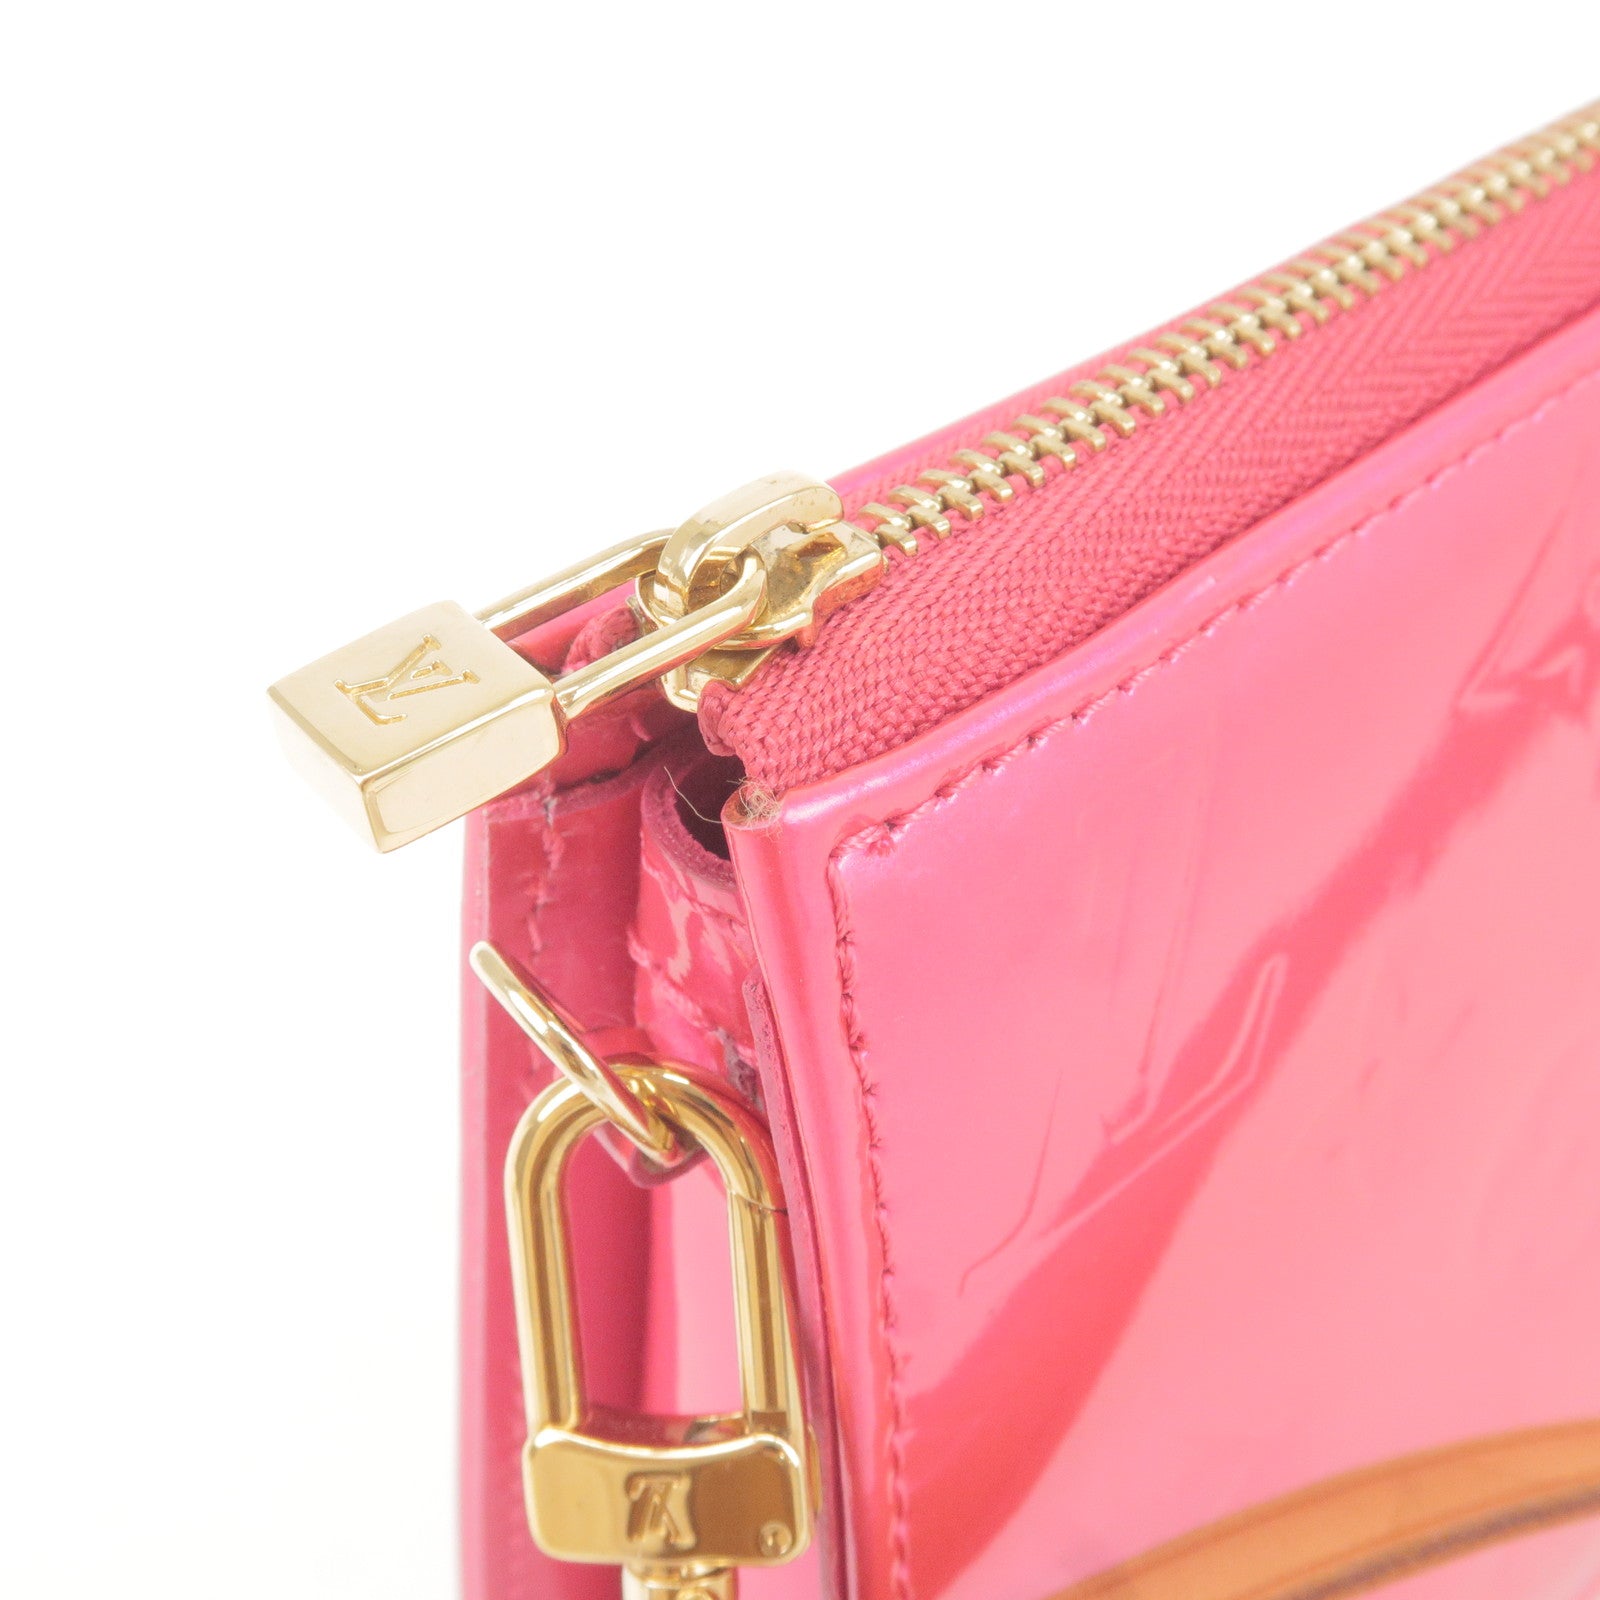 Lexington patent leather handbag Louis Vuitton Pink in Patent